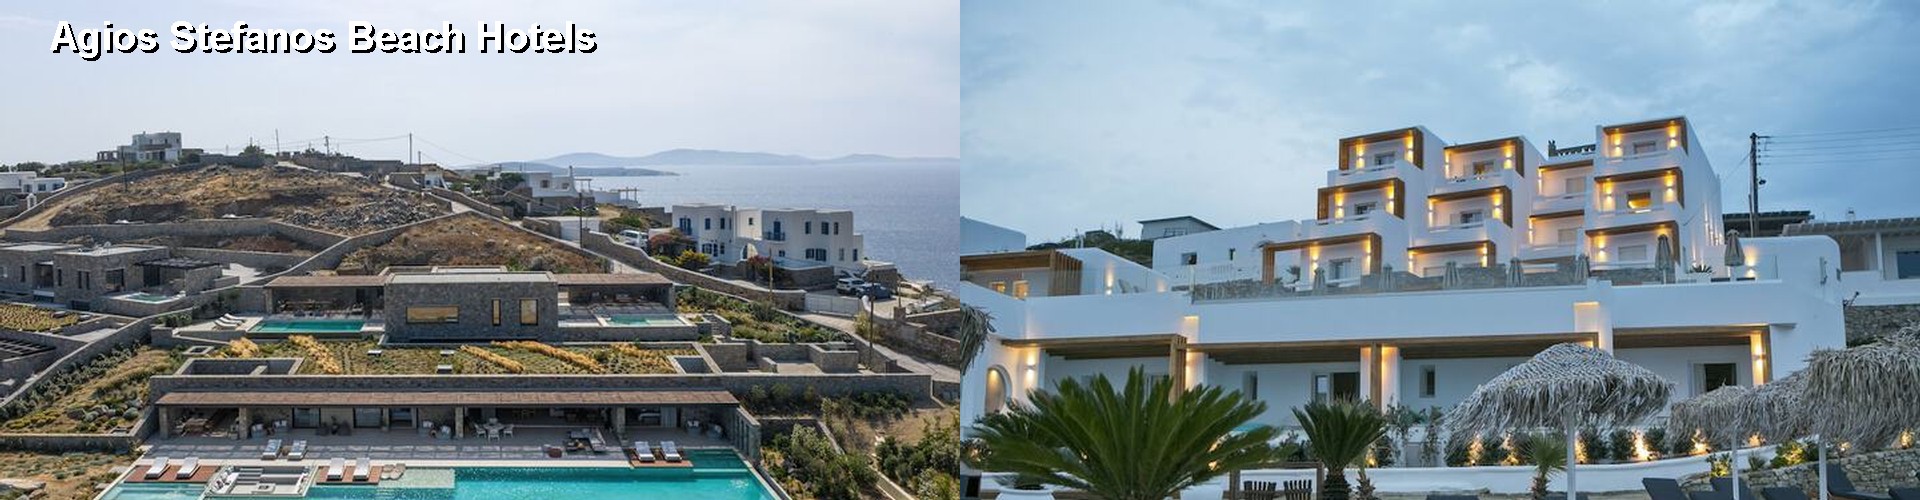 5 Best Hotels near Agios Stefanos Beach